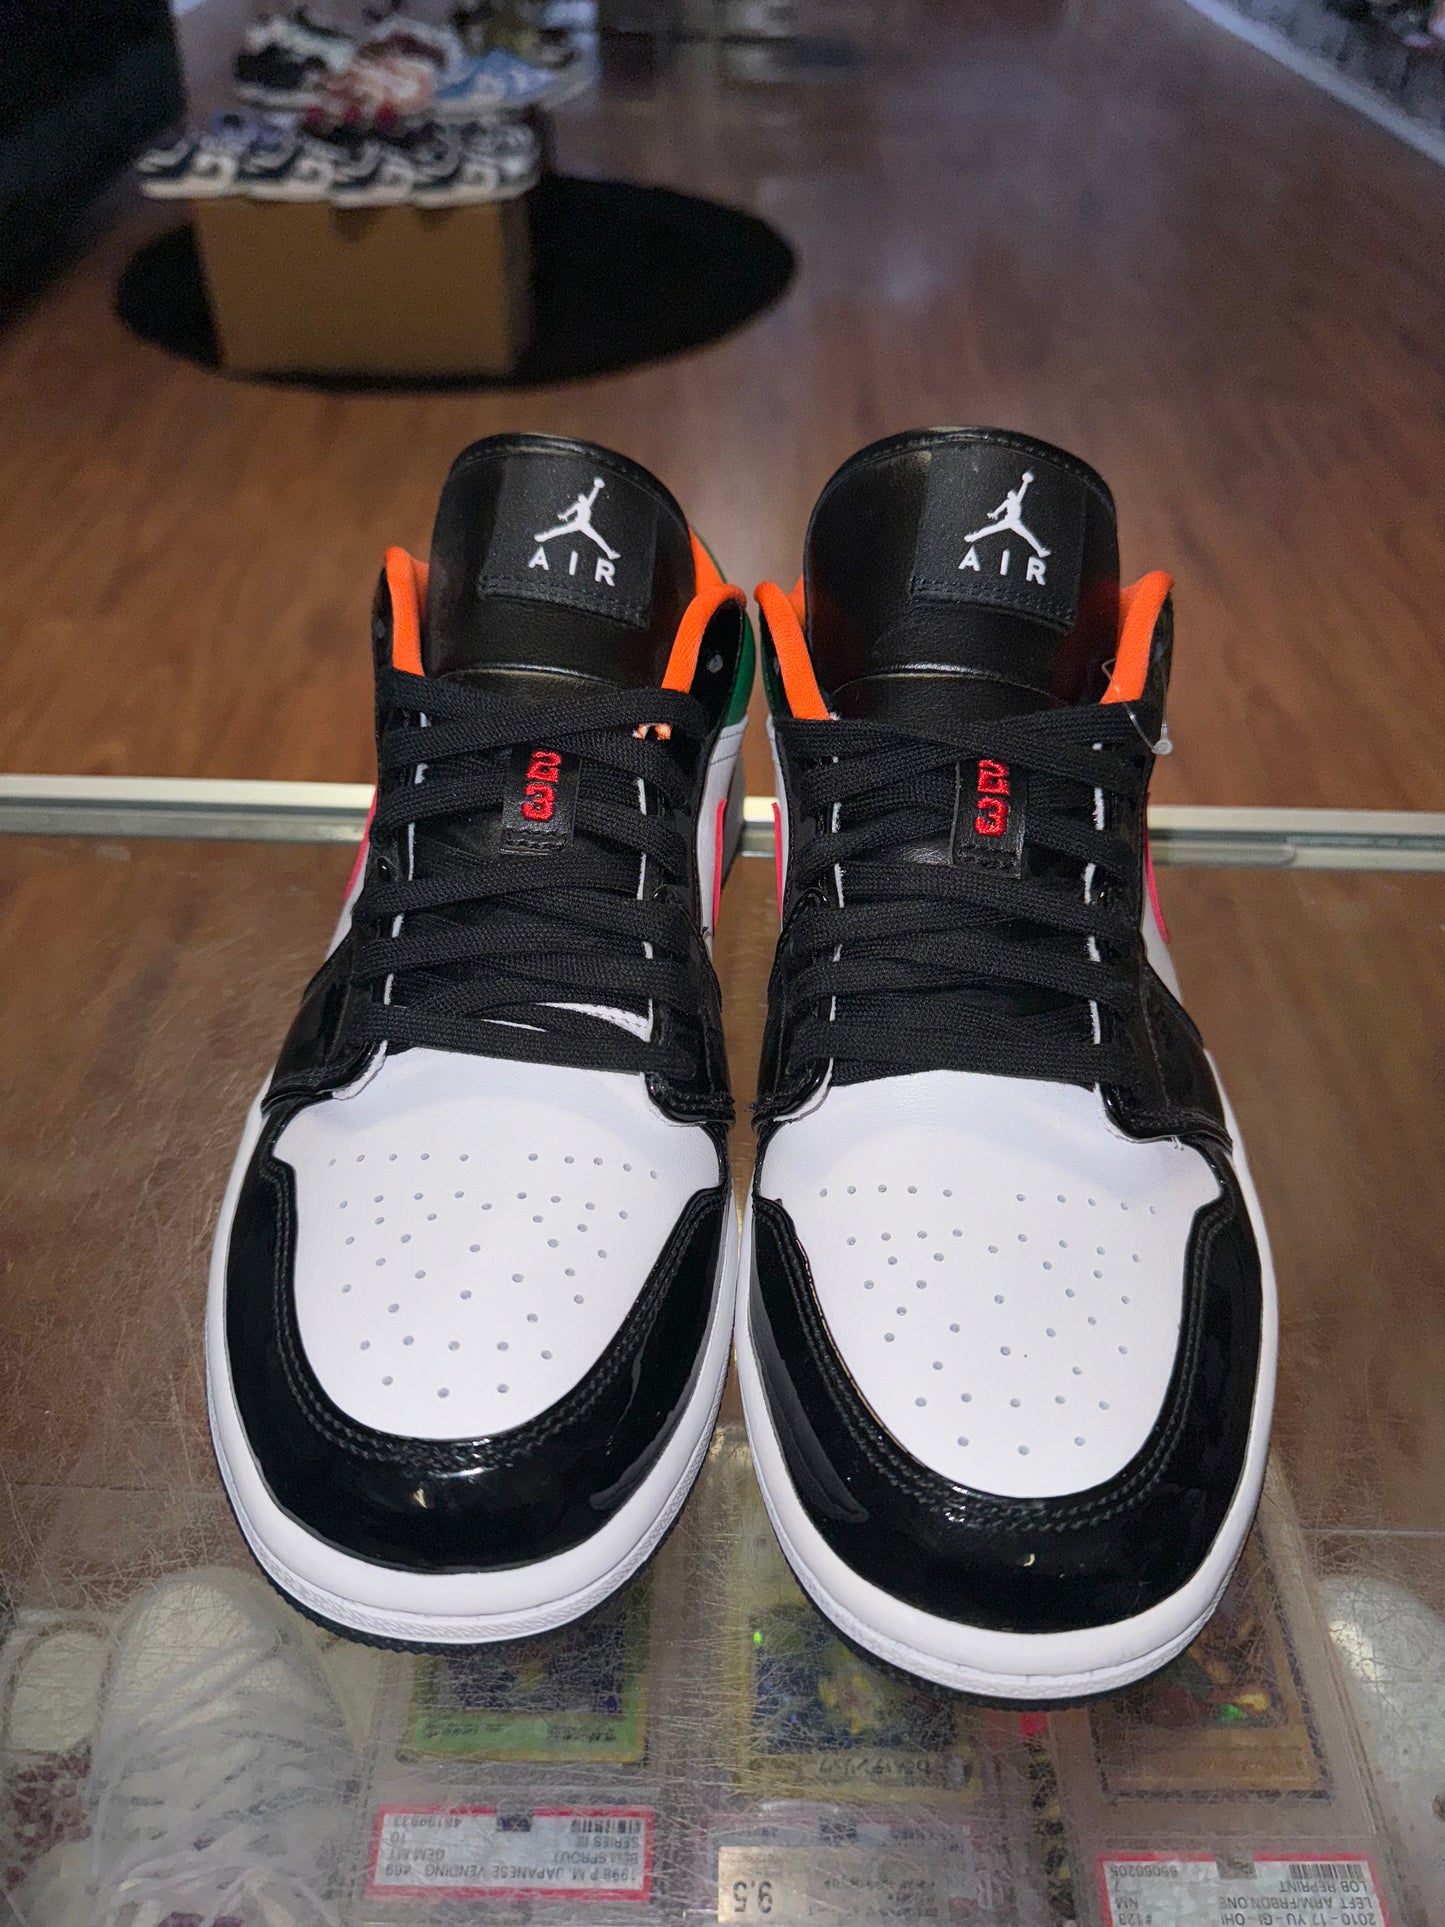 Size 9.5 (11W) Air Jordan 1 "Multi Color Black Toe" Brand New (MAMO)